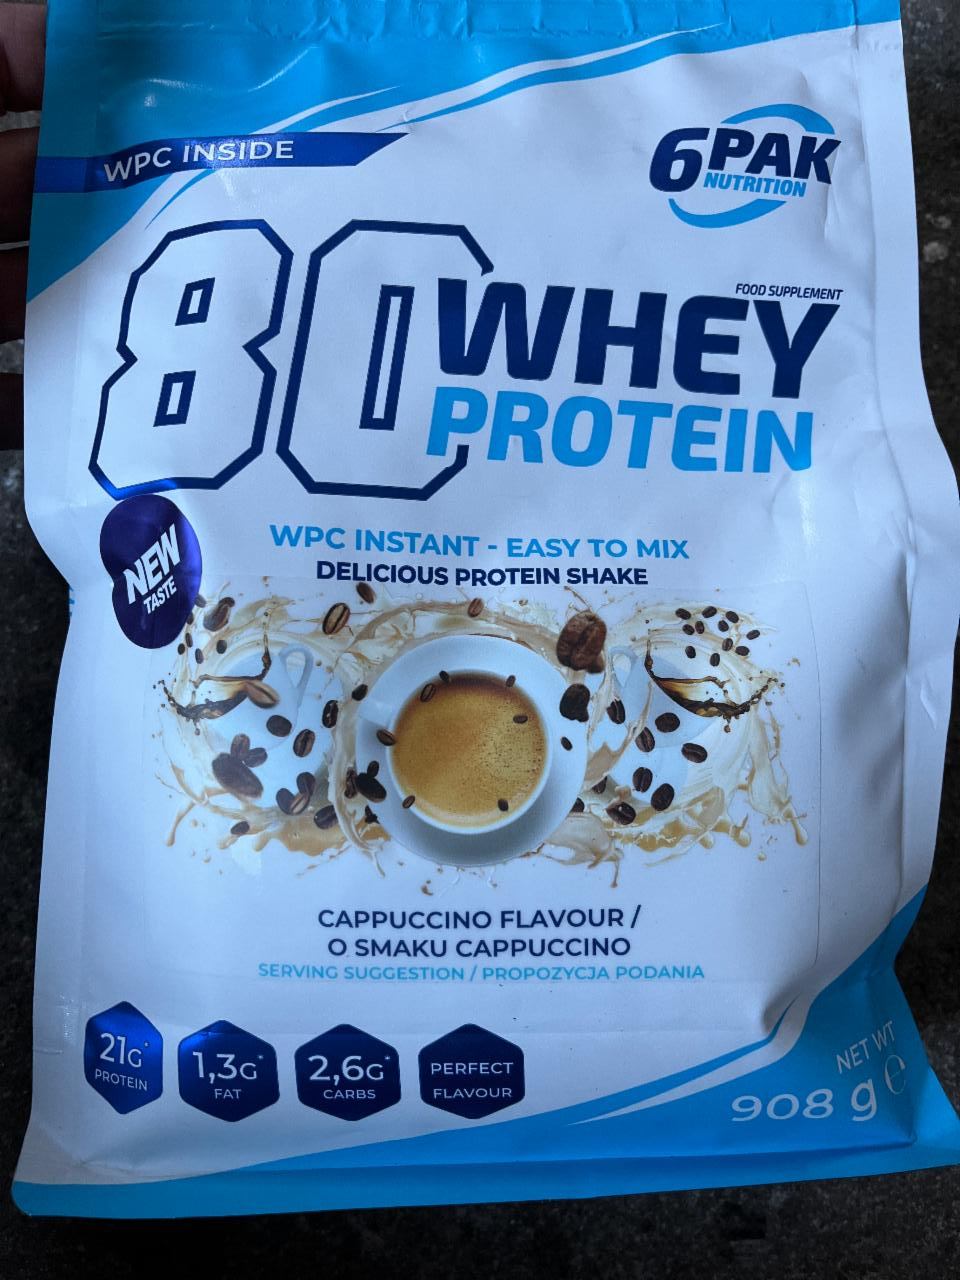 Zdjęcia - whey protein cappuccino 6Pak nutrition